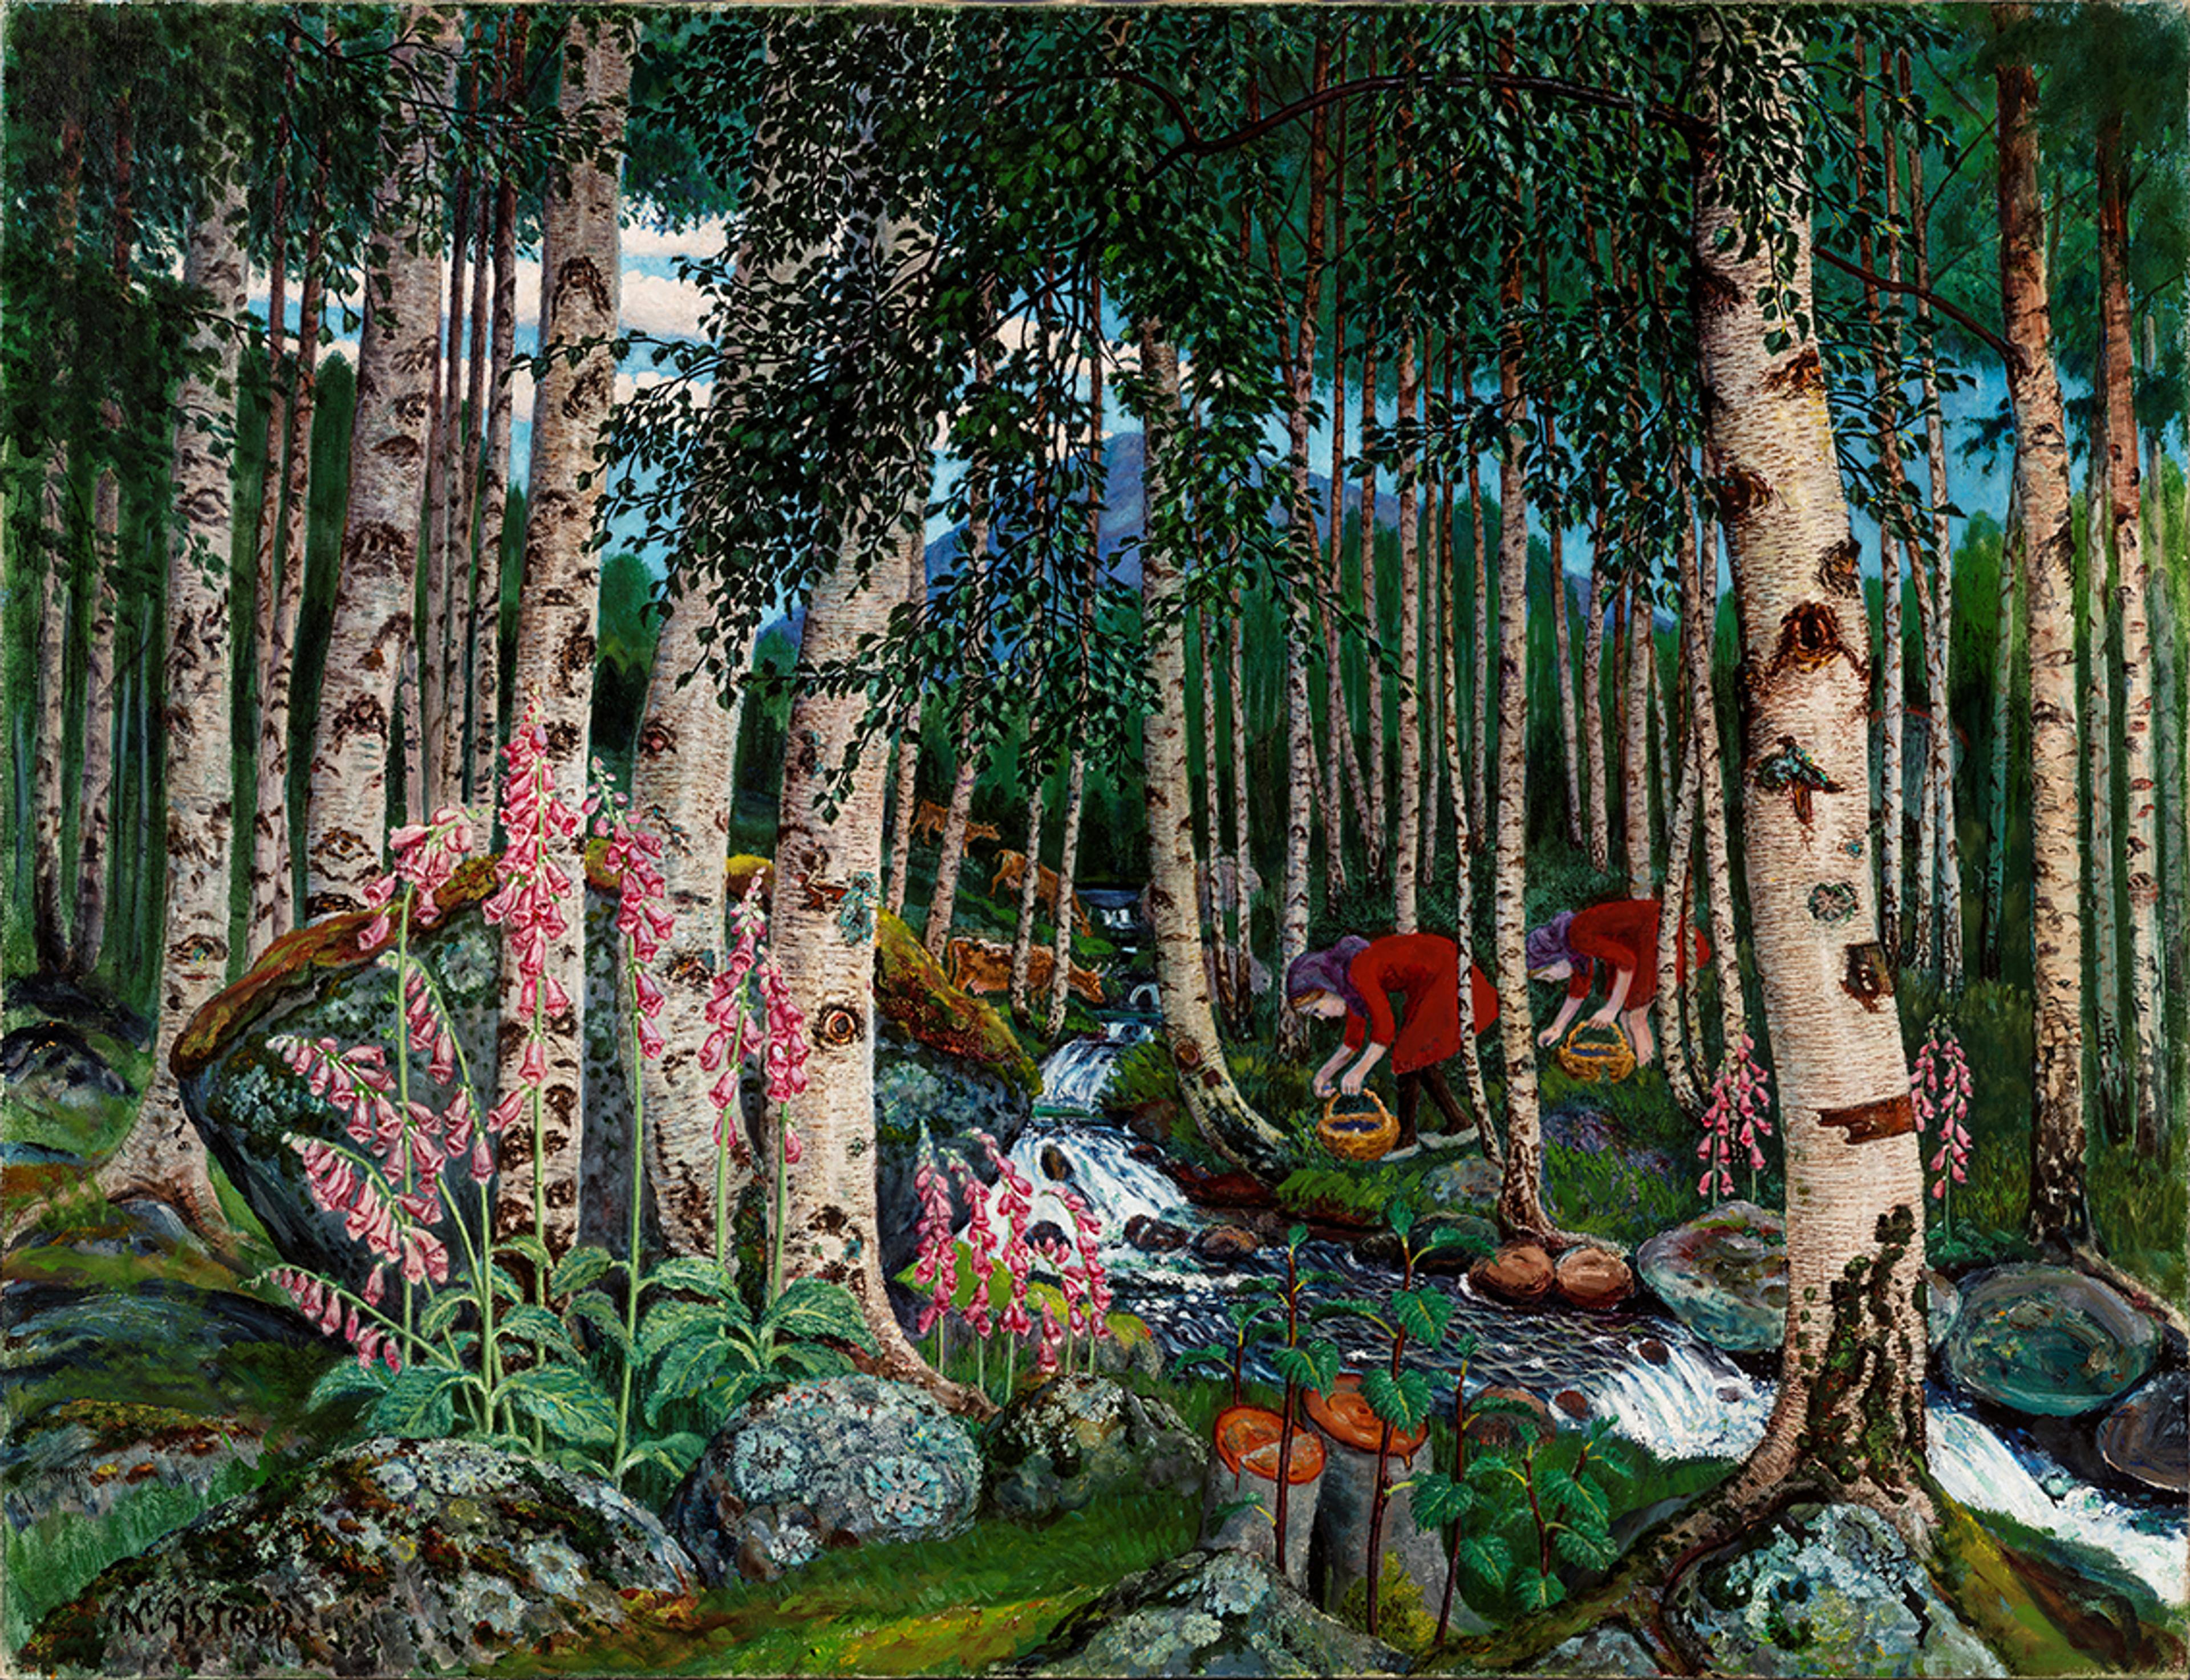 Maleri av Nikolai Astrup som er svært detaljert og viser to jenter i røde kjoler og skaut som plukker noe i korger i en skog. De står ved en liten elv og er omsluttet av bjørketrær som har grønne blader. I front ses en gruppe revebjeller.  